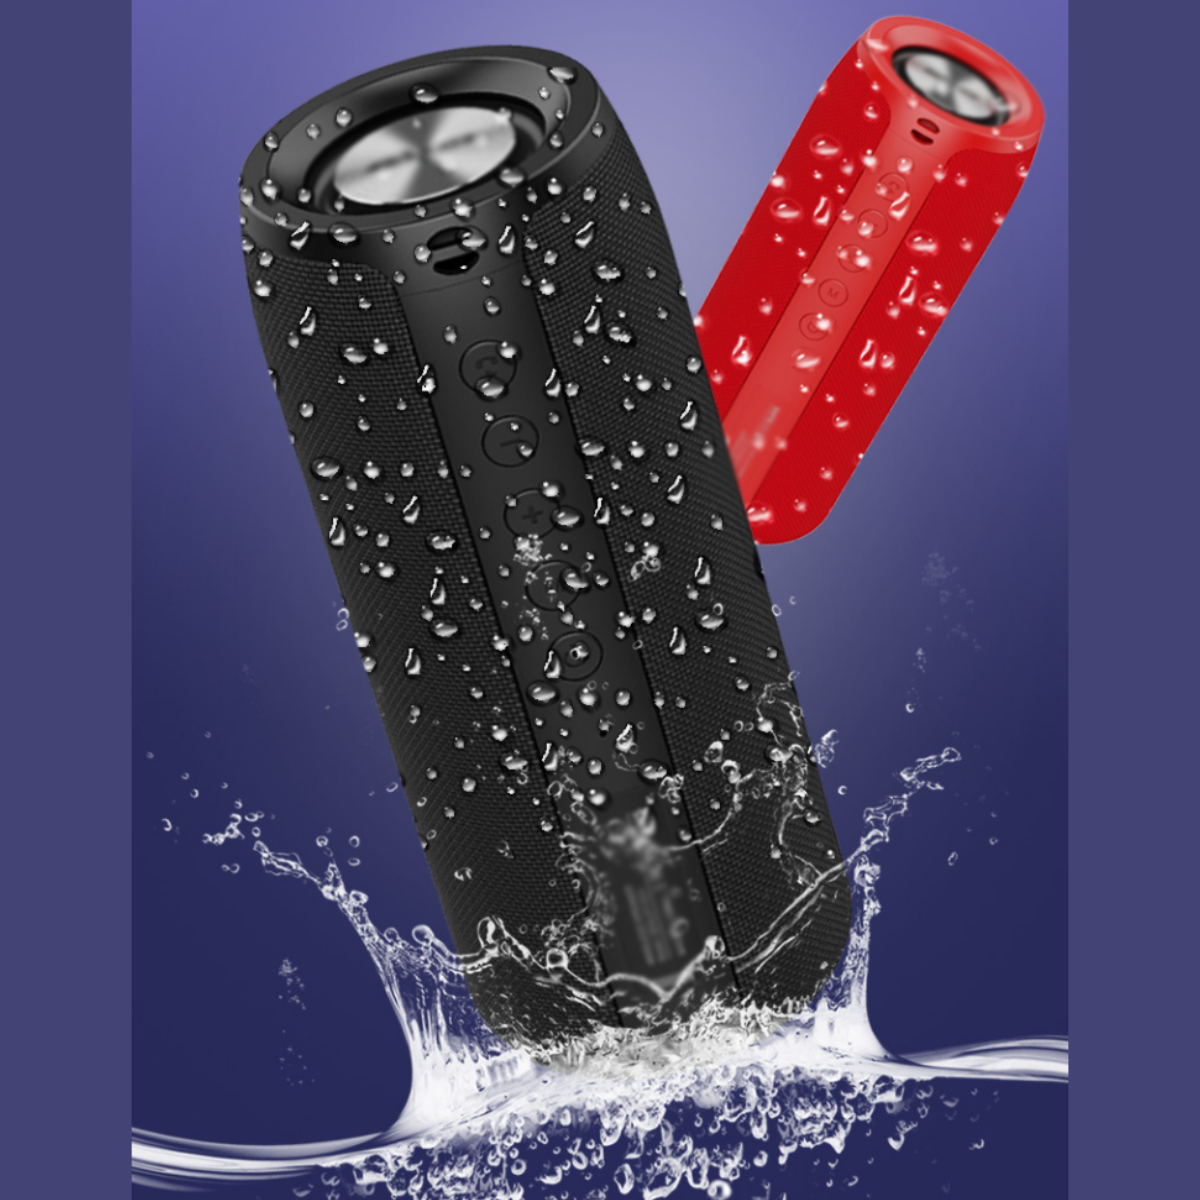 Rot Drahtloser und Bluetooth-Lautsprecher, Subwoofer tragbar, Kompakt - Bluetooth-Lautsprecher ENBAOXIN